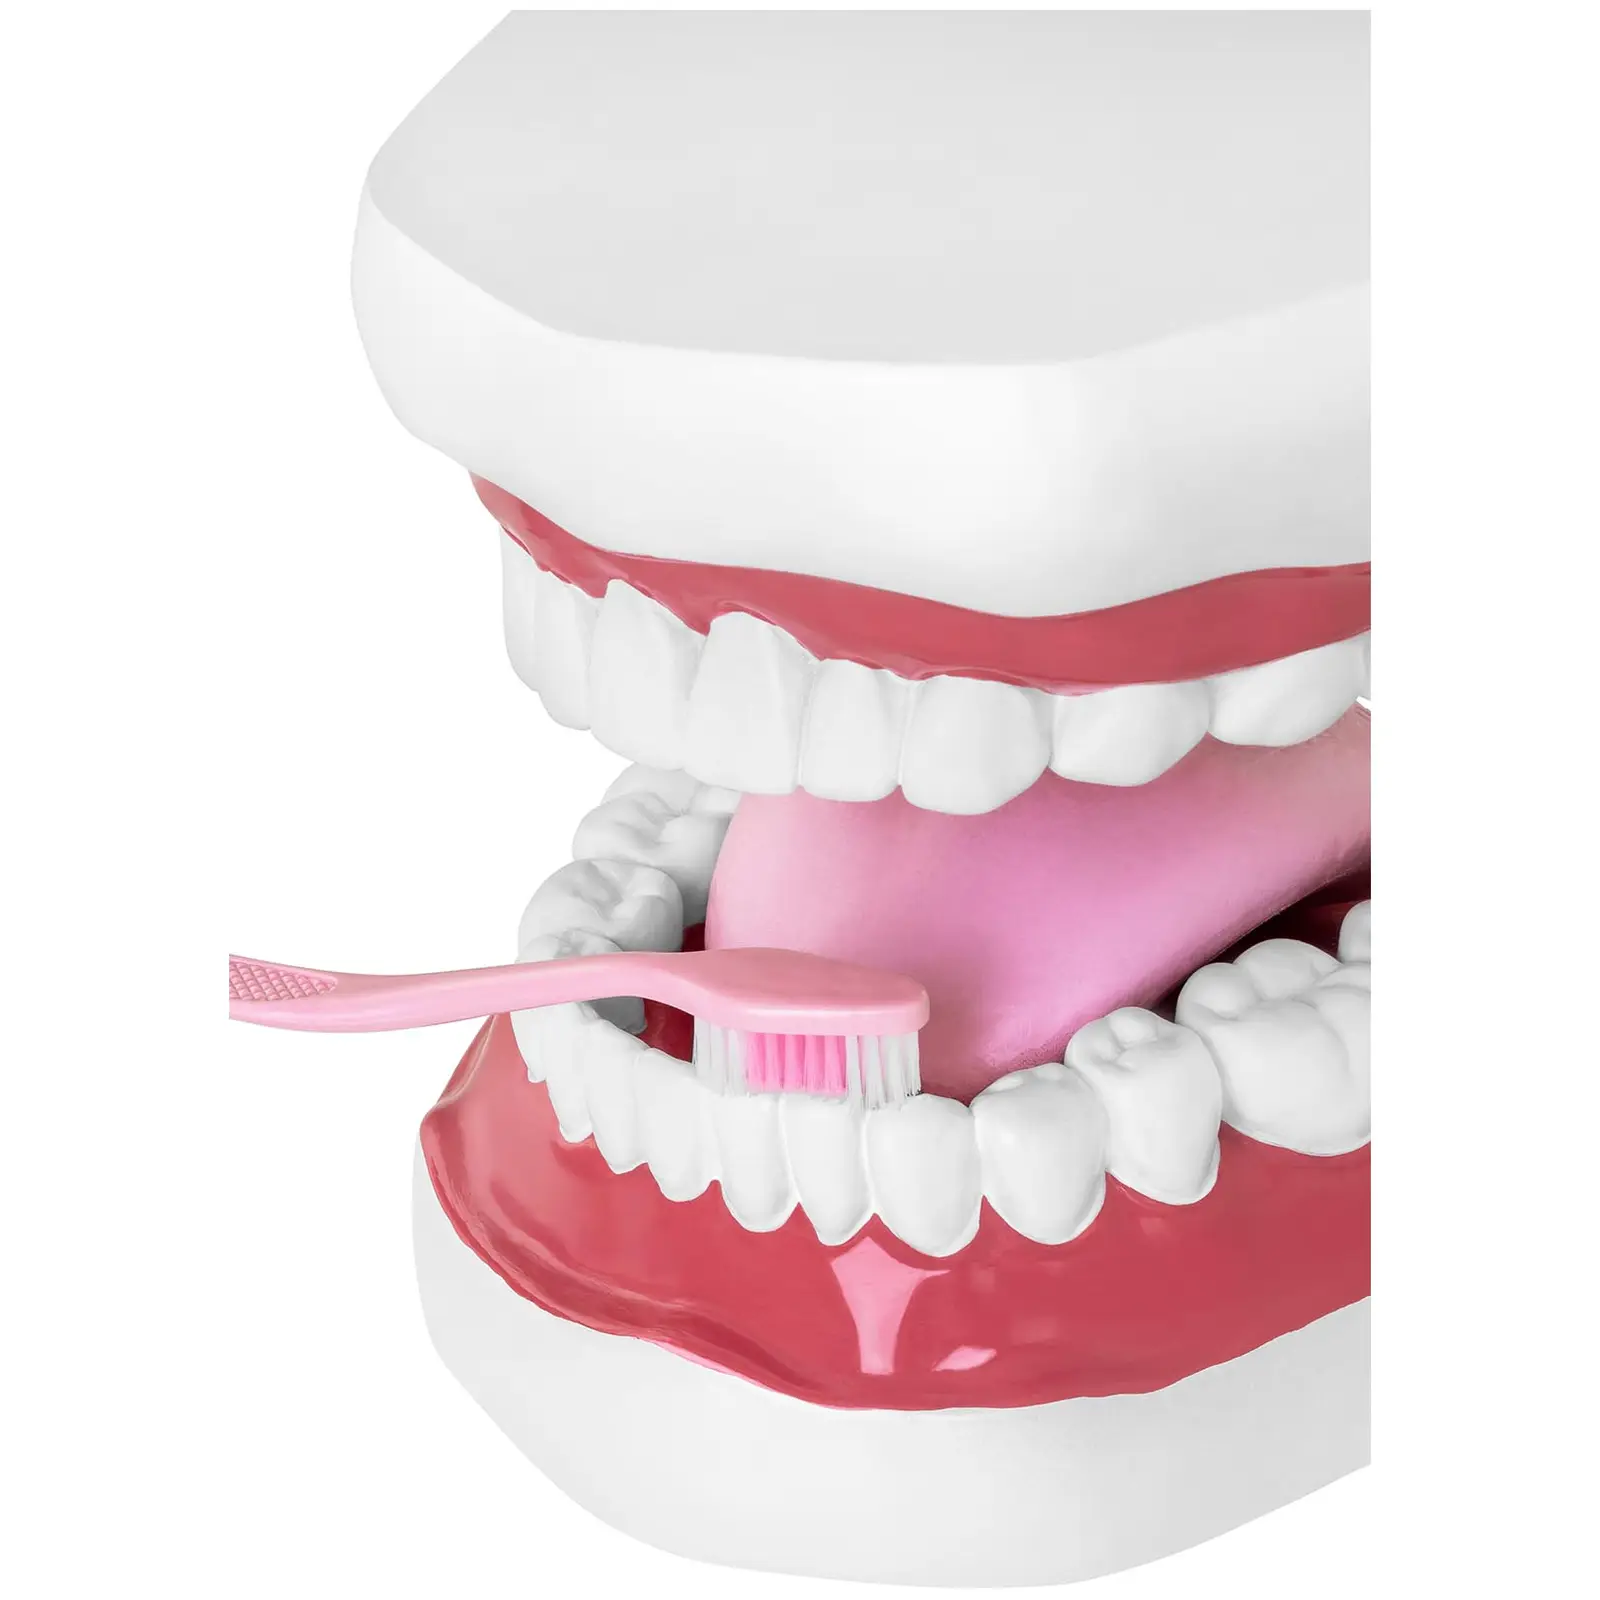 Seconda Mano Modello anatomico denti - Dentatura